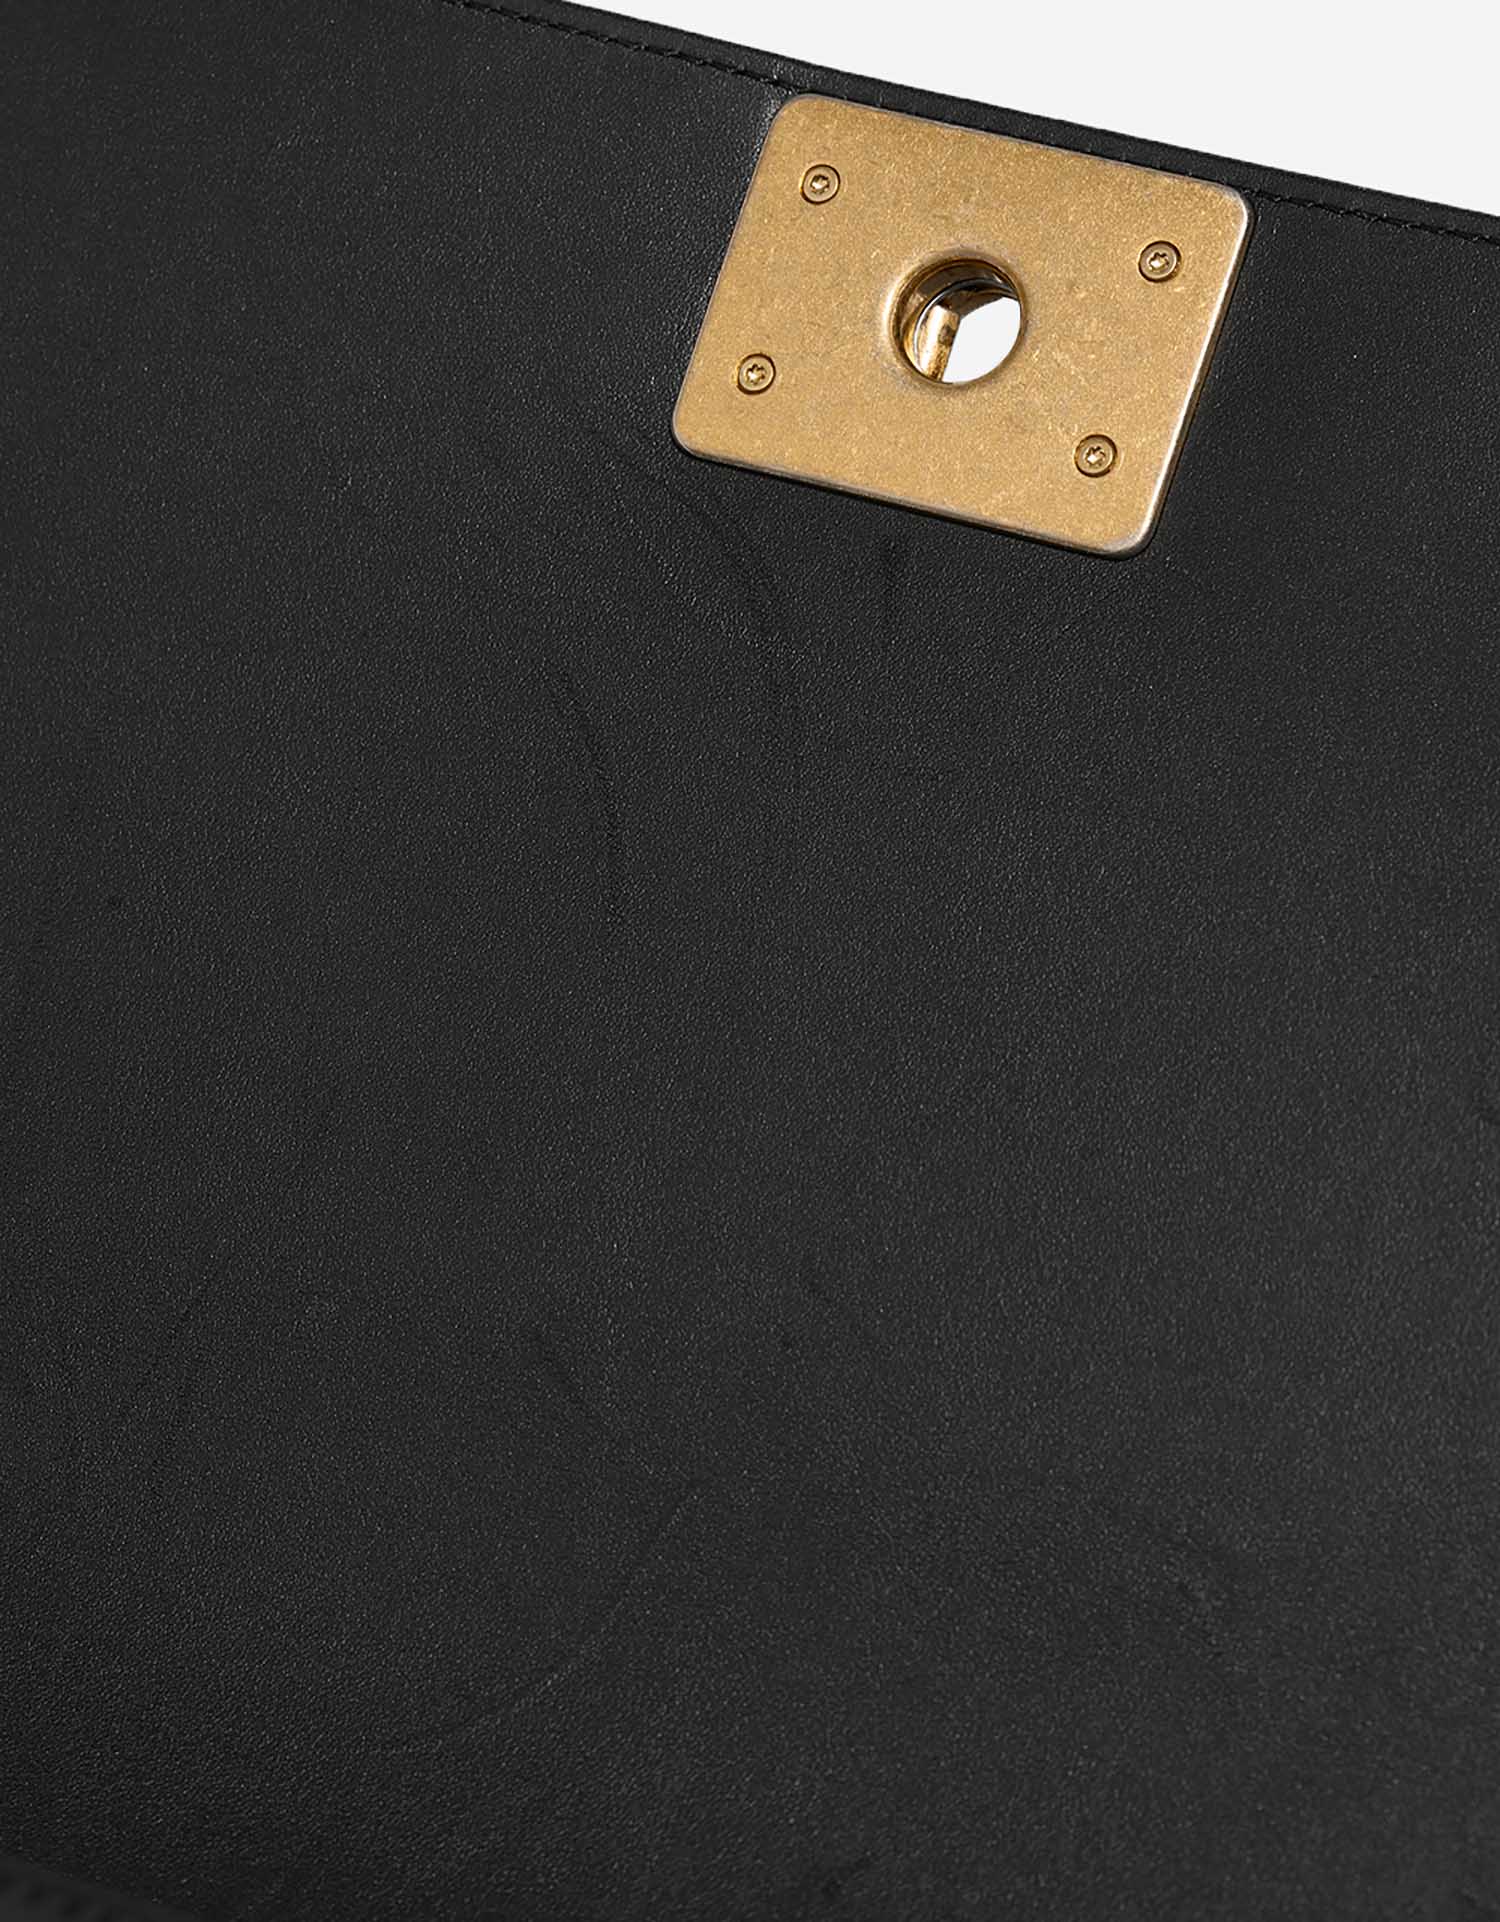 Chanel Boy NewMedium Schwarz Gebrauchsspuren 1 | Verkaufen Sie Ihre Designer-Tasche auf Saclab.com